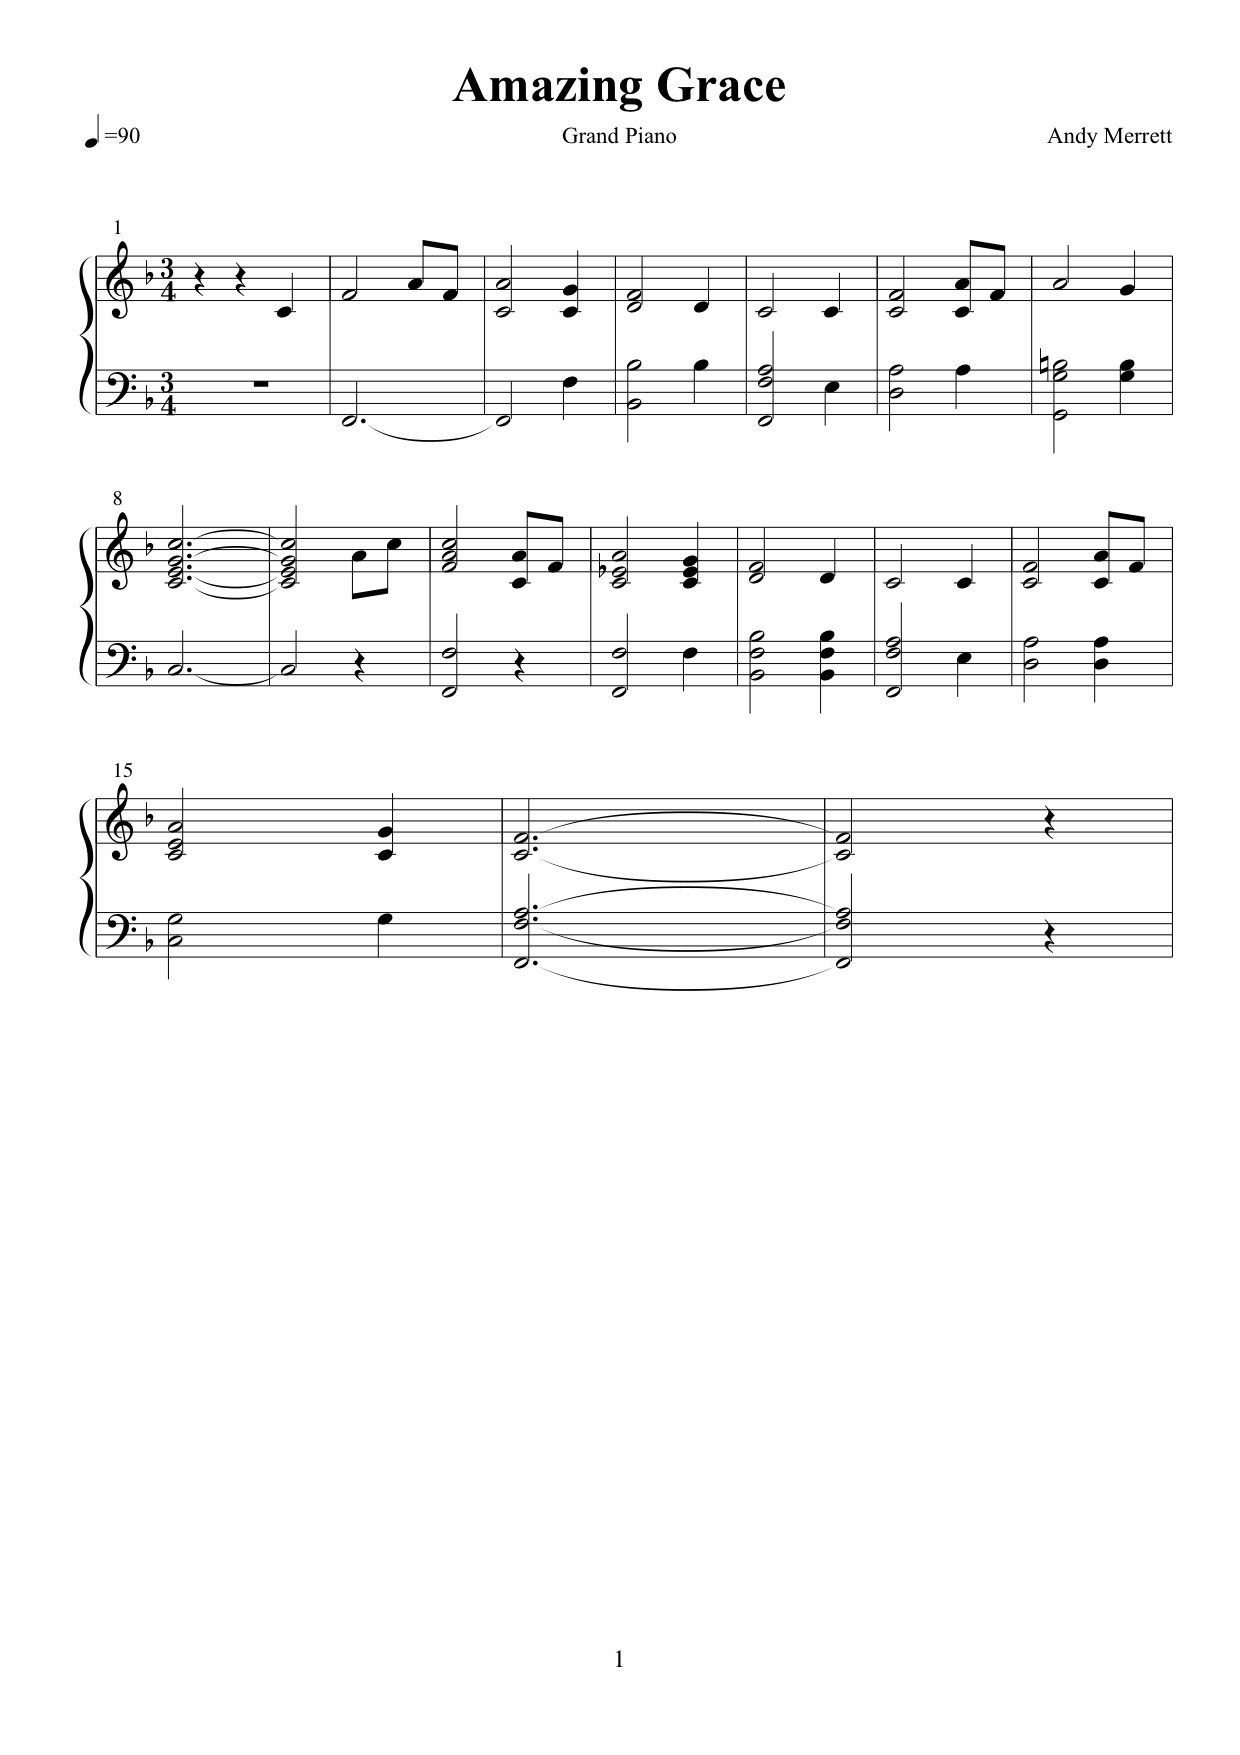 Amazing Grace sheet music variation 1